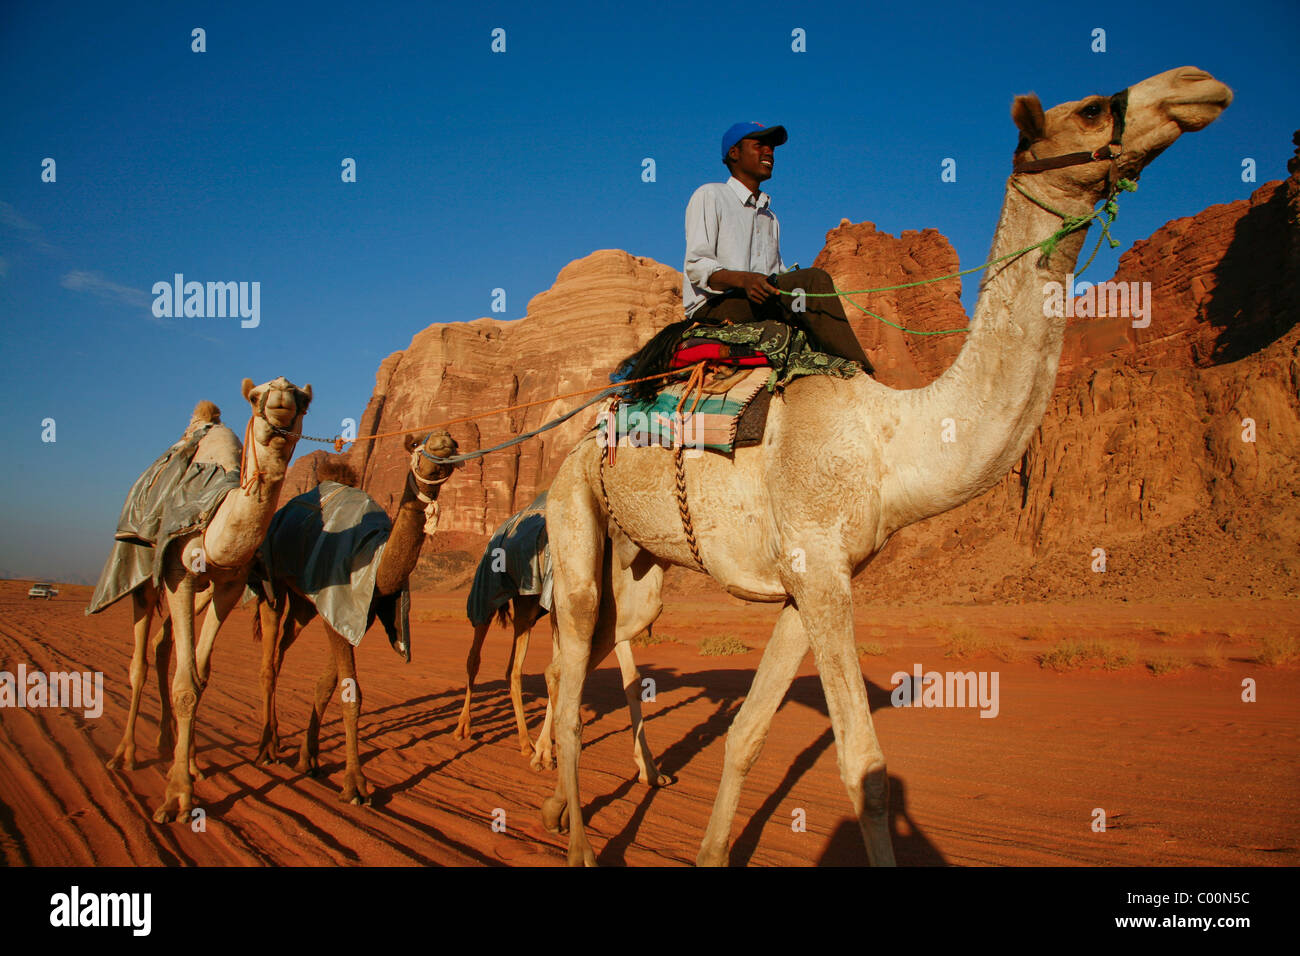 Hombre Sudani capacitación para las carreras de camellos, Wadi Rum, Jordania. Foto de stock